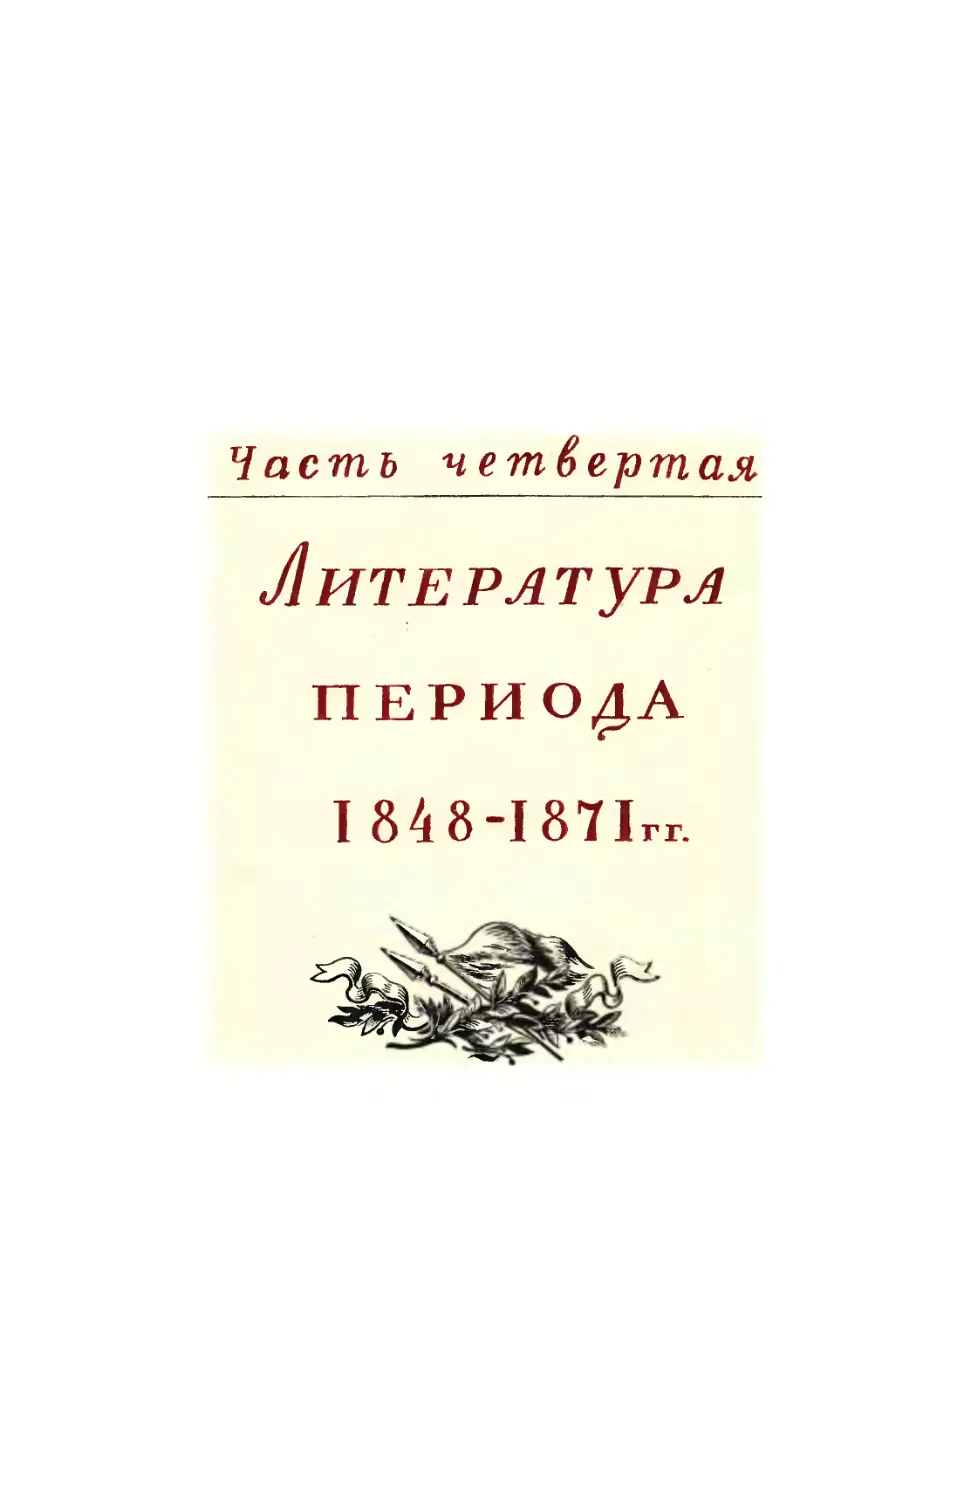 Часть четвертая. Литература периода 1848-1871 гг.